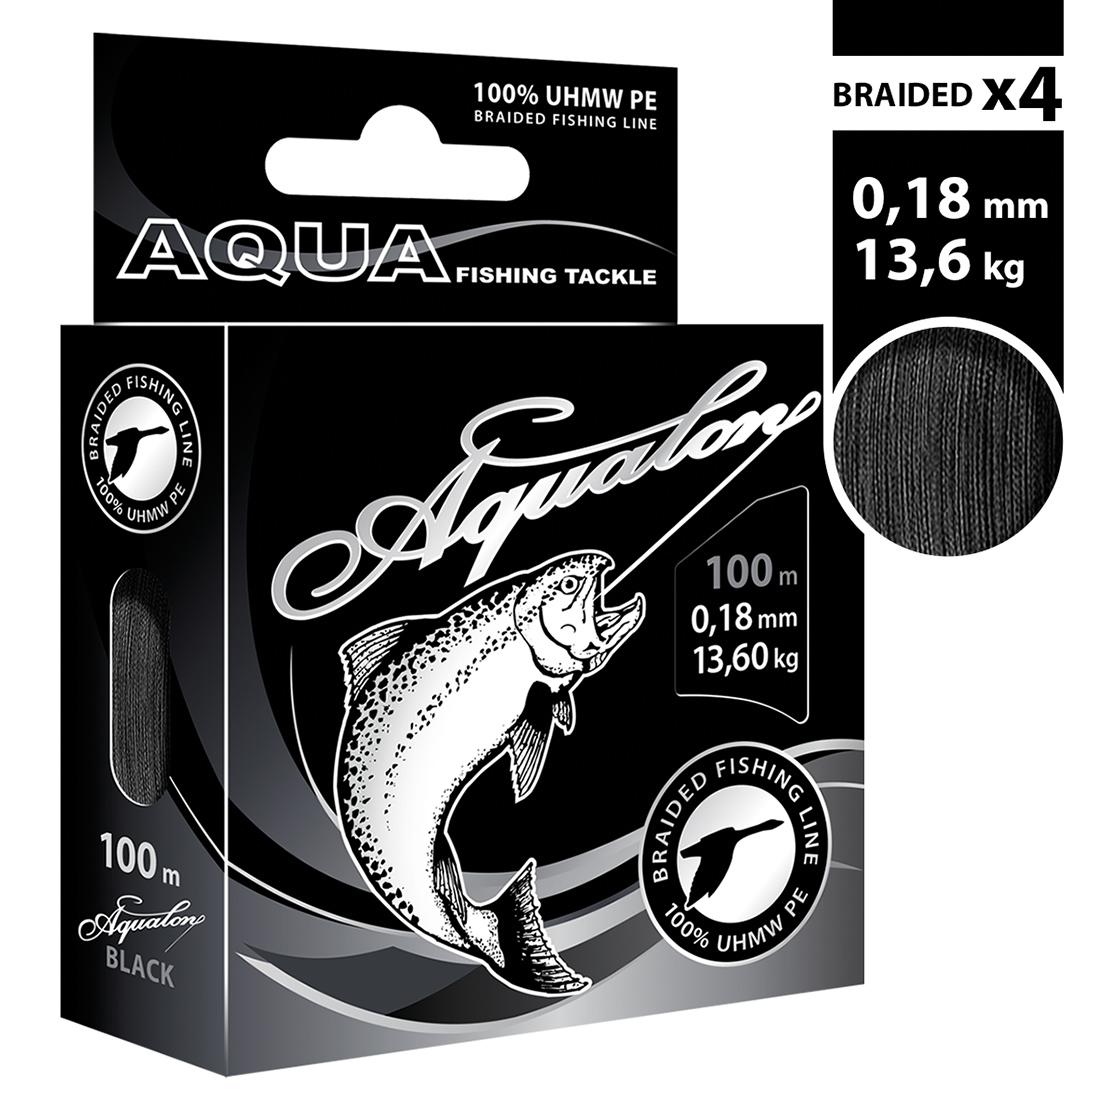 Плетеный шнур AQUA Aqualon Black 0,18mm 100m, цвет - черный, test - 13,60kg